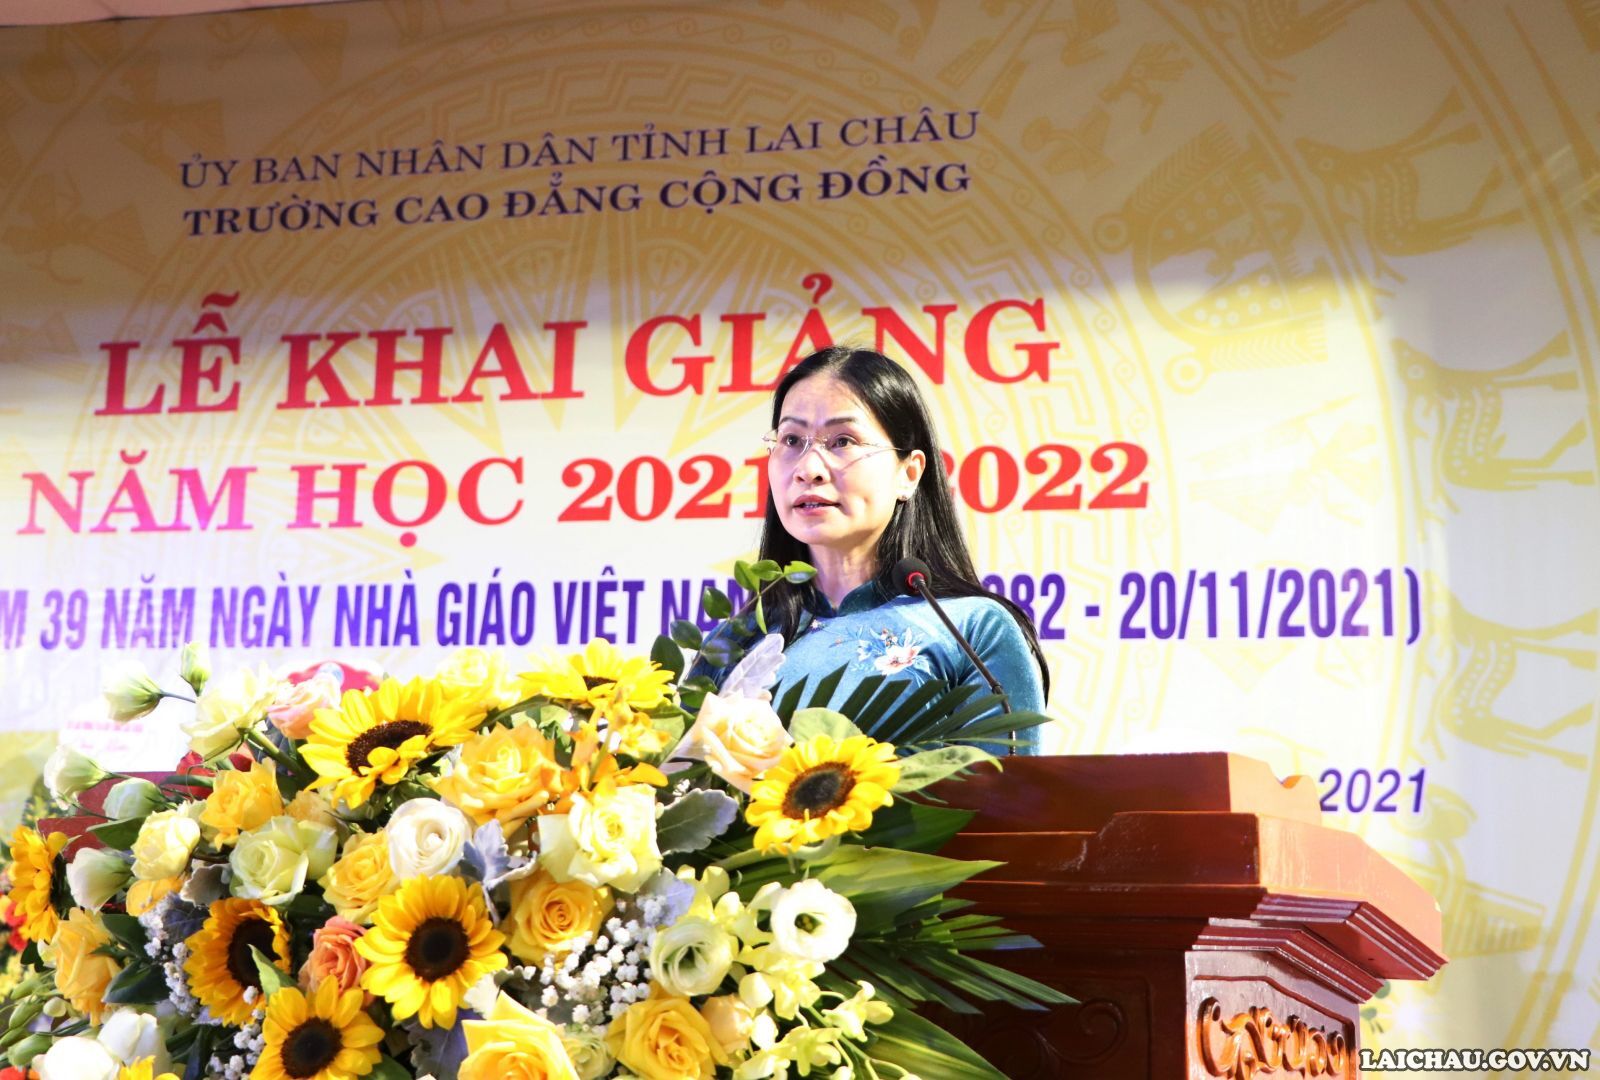 Trường Cao đẳng cộng đồng: Khai giảng năm học 2021 - 2022 và kỷ niệm 39 năm  Ngày Nhà giáo Việt Nam